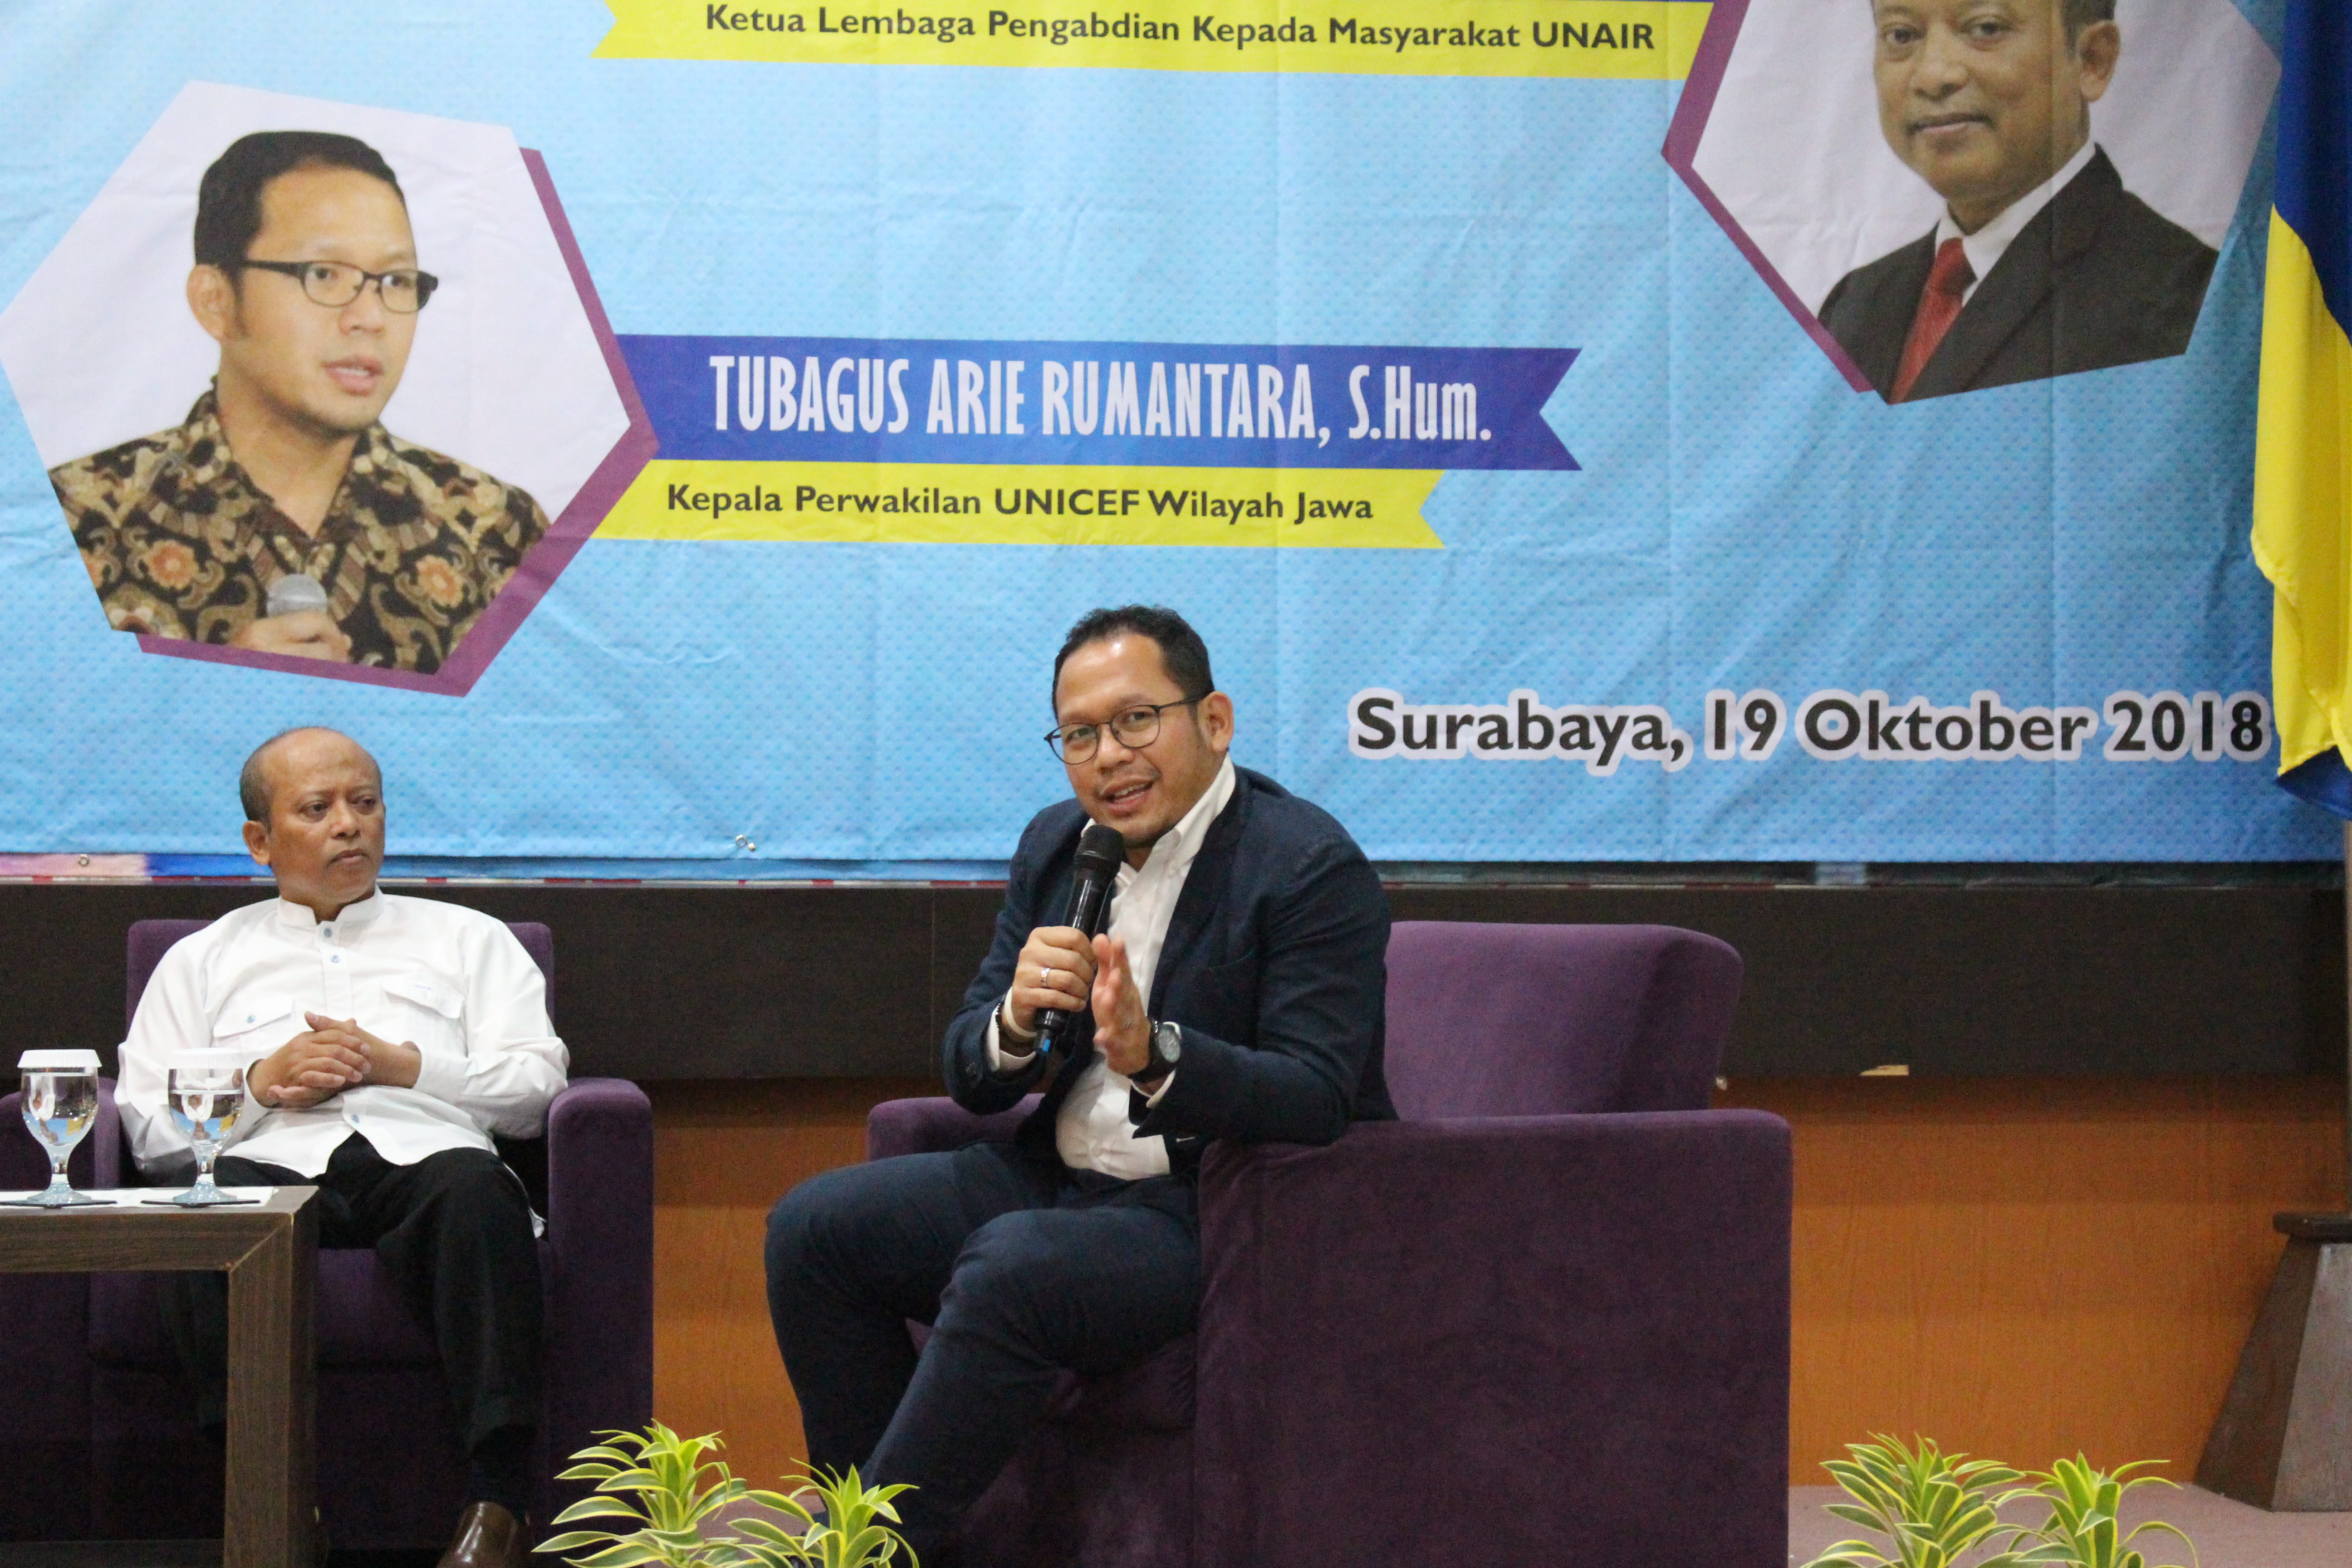 TUBAGUS Arie Rumantara, S. Hum., (kanan) dan Prof . Dr. H. Jusuf Irianto , Drs., M.Com, ketua LPM (Lembaga Pengabdian kepada Masyarakat) Universitas Airlangga. (Foto: Tunjung Senja)